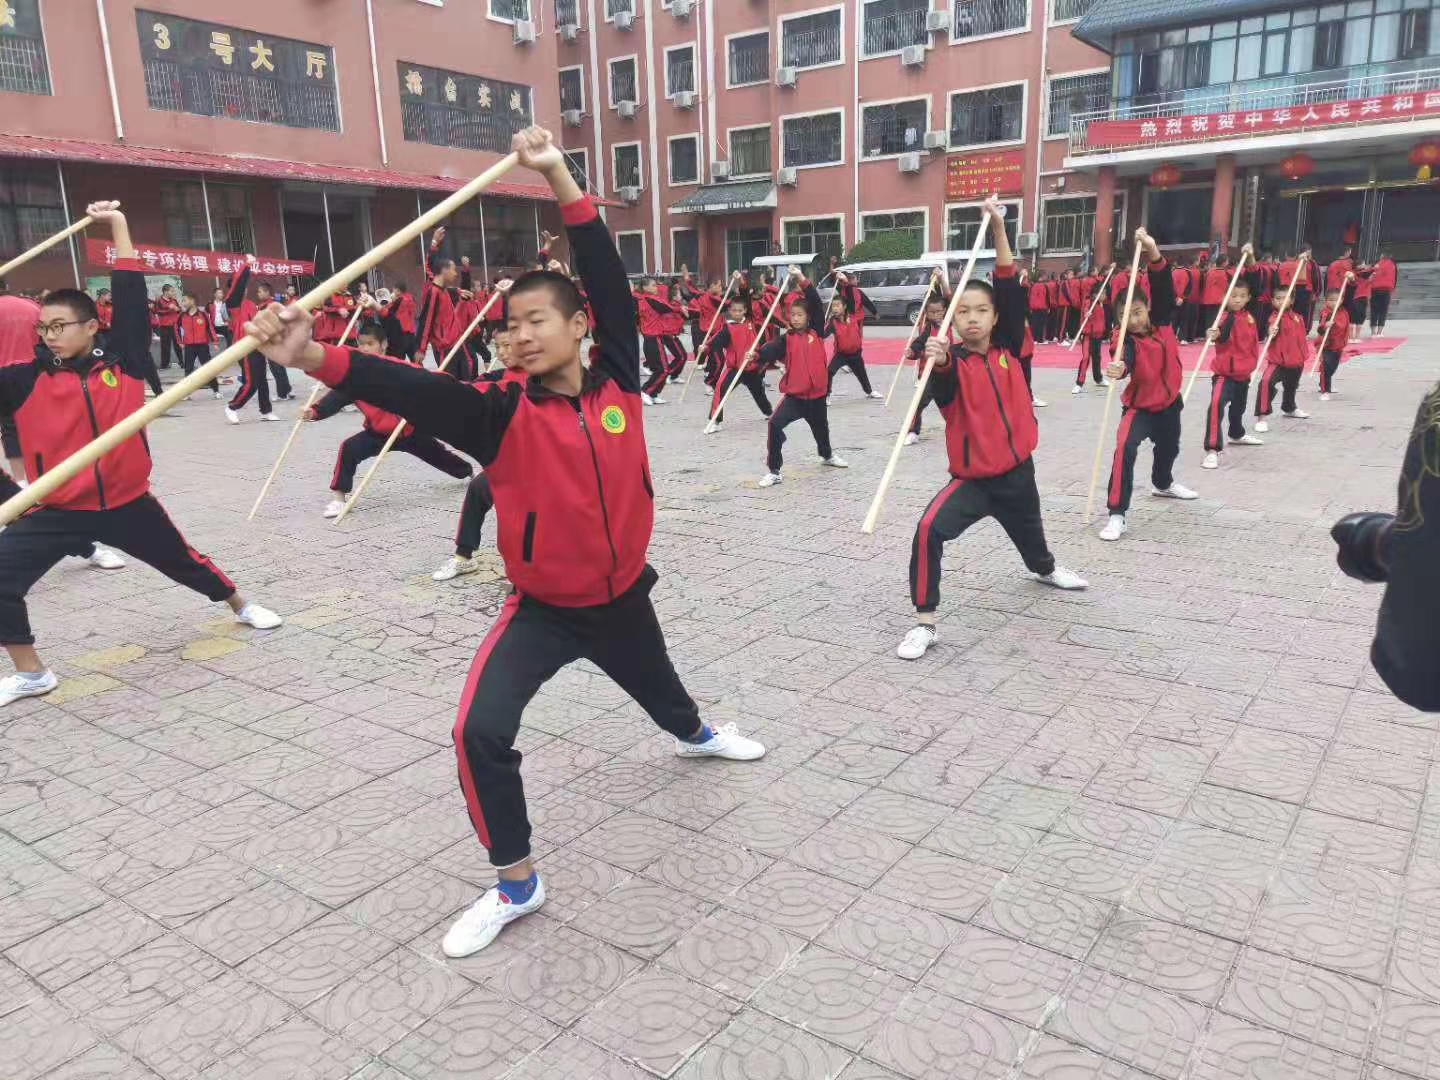 少林寺武术学校学生正在练习武术